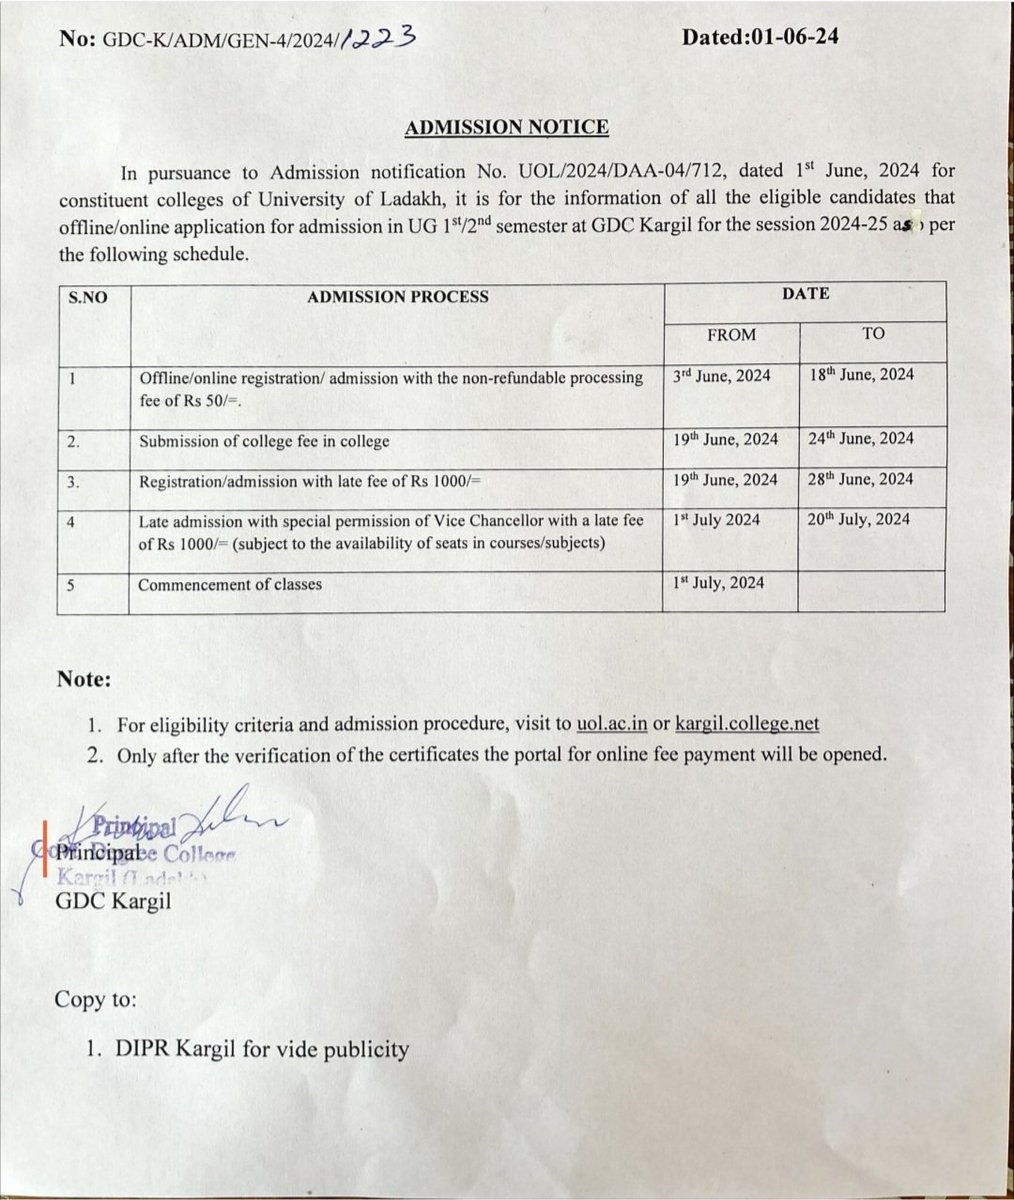 UG admission Notice. @LadakhSecretary @DIPR_Kargil @prasarbharti